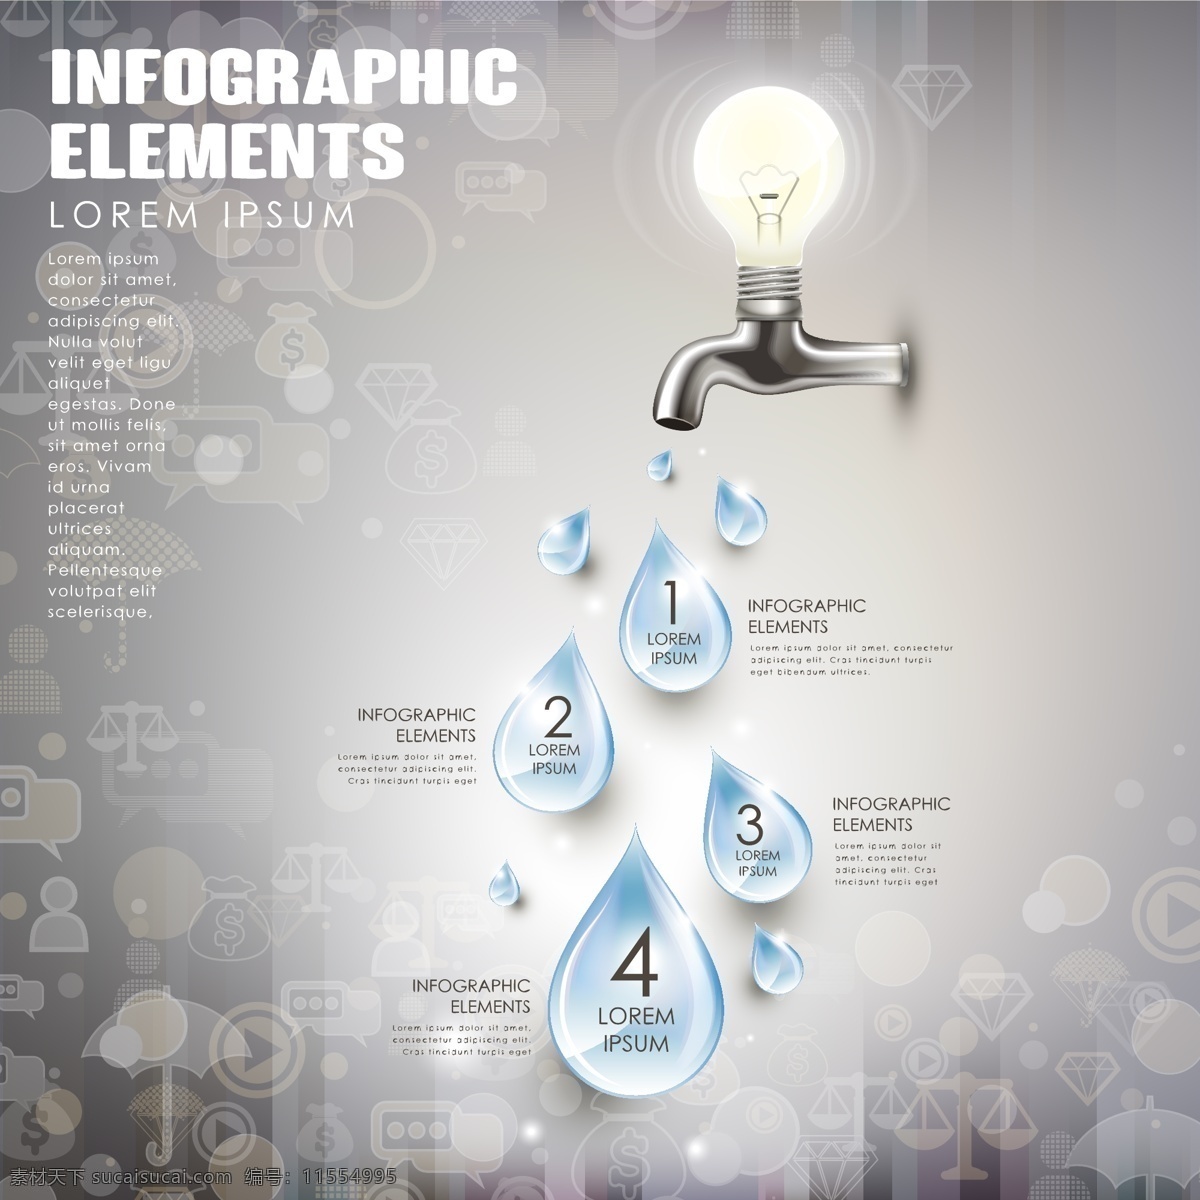 水滴 商务 信息 图 水龙头 信息图 灯泡 矢量图 矢量 高清图片